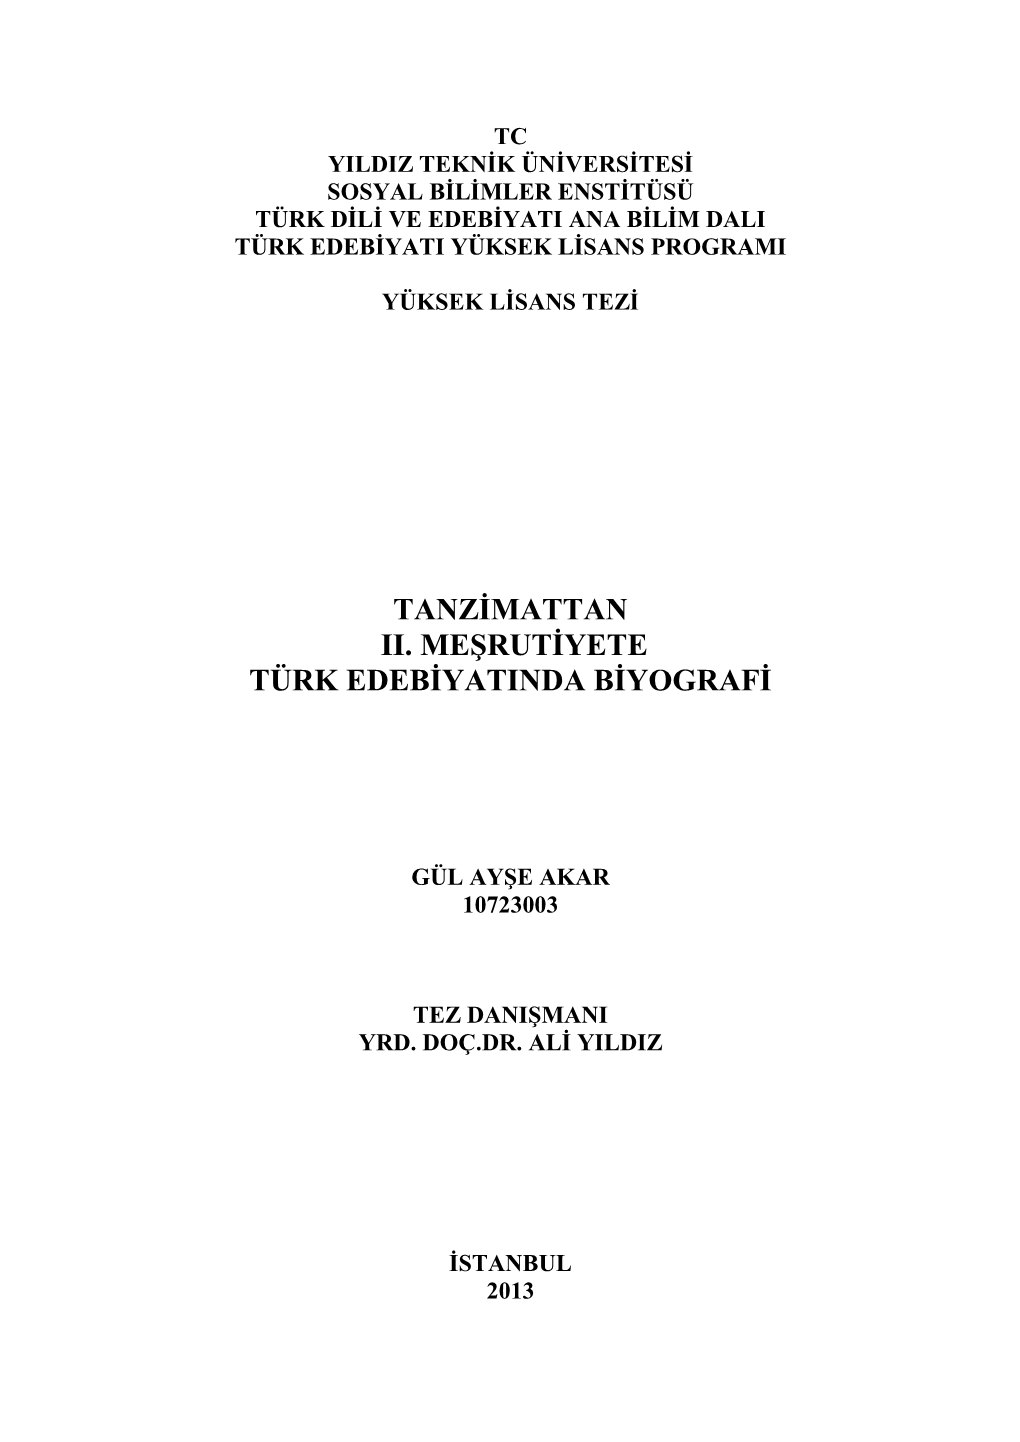 Tanzimattan Ii. Meşrutiyete Türk Edebiyatinda Biyografi